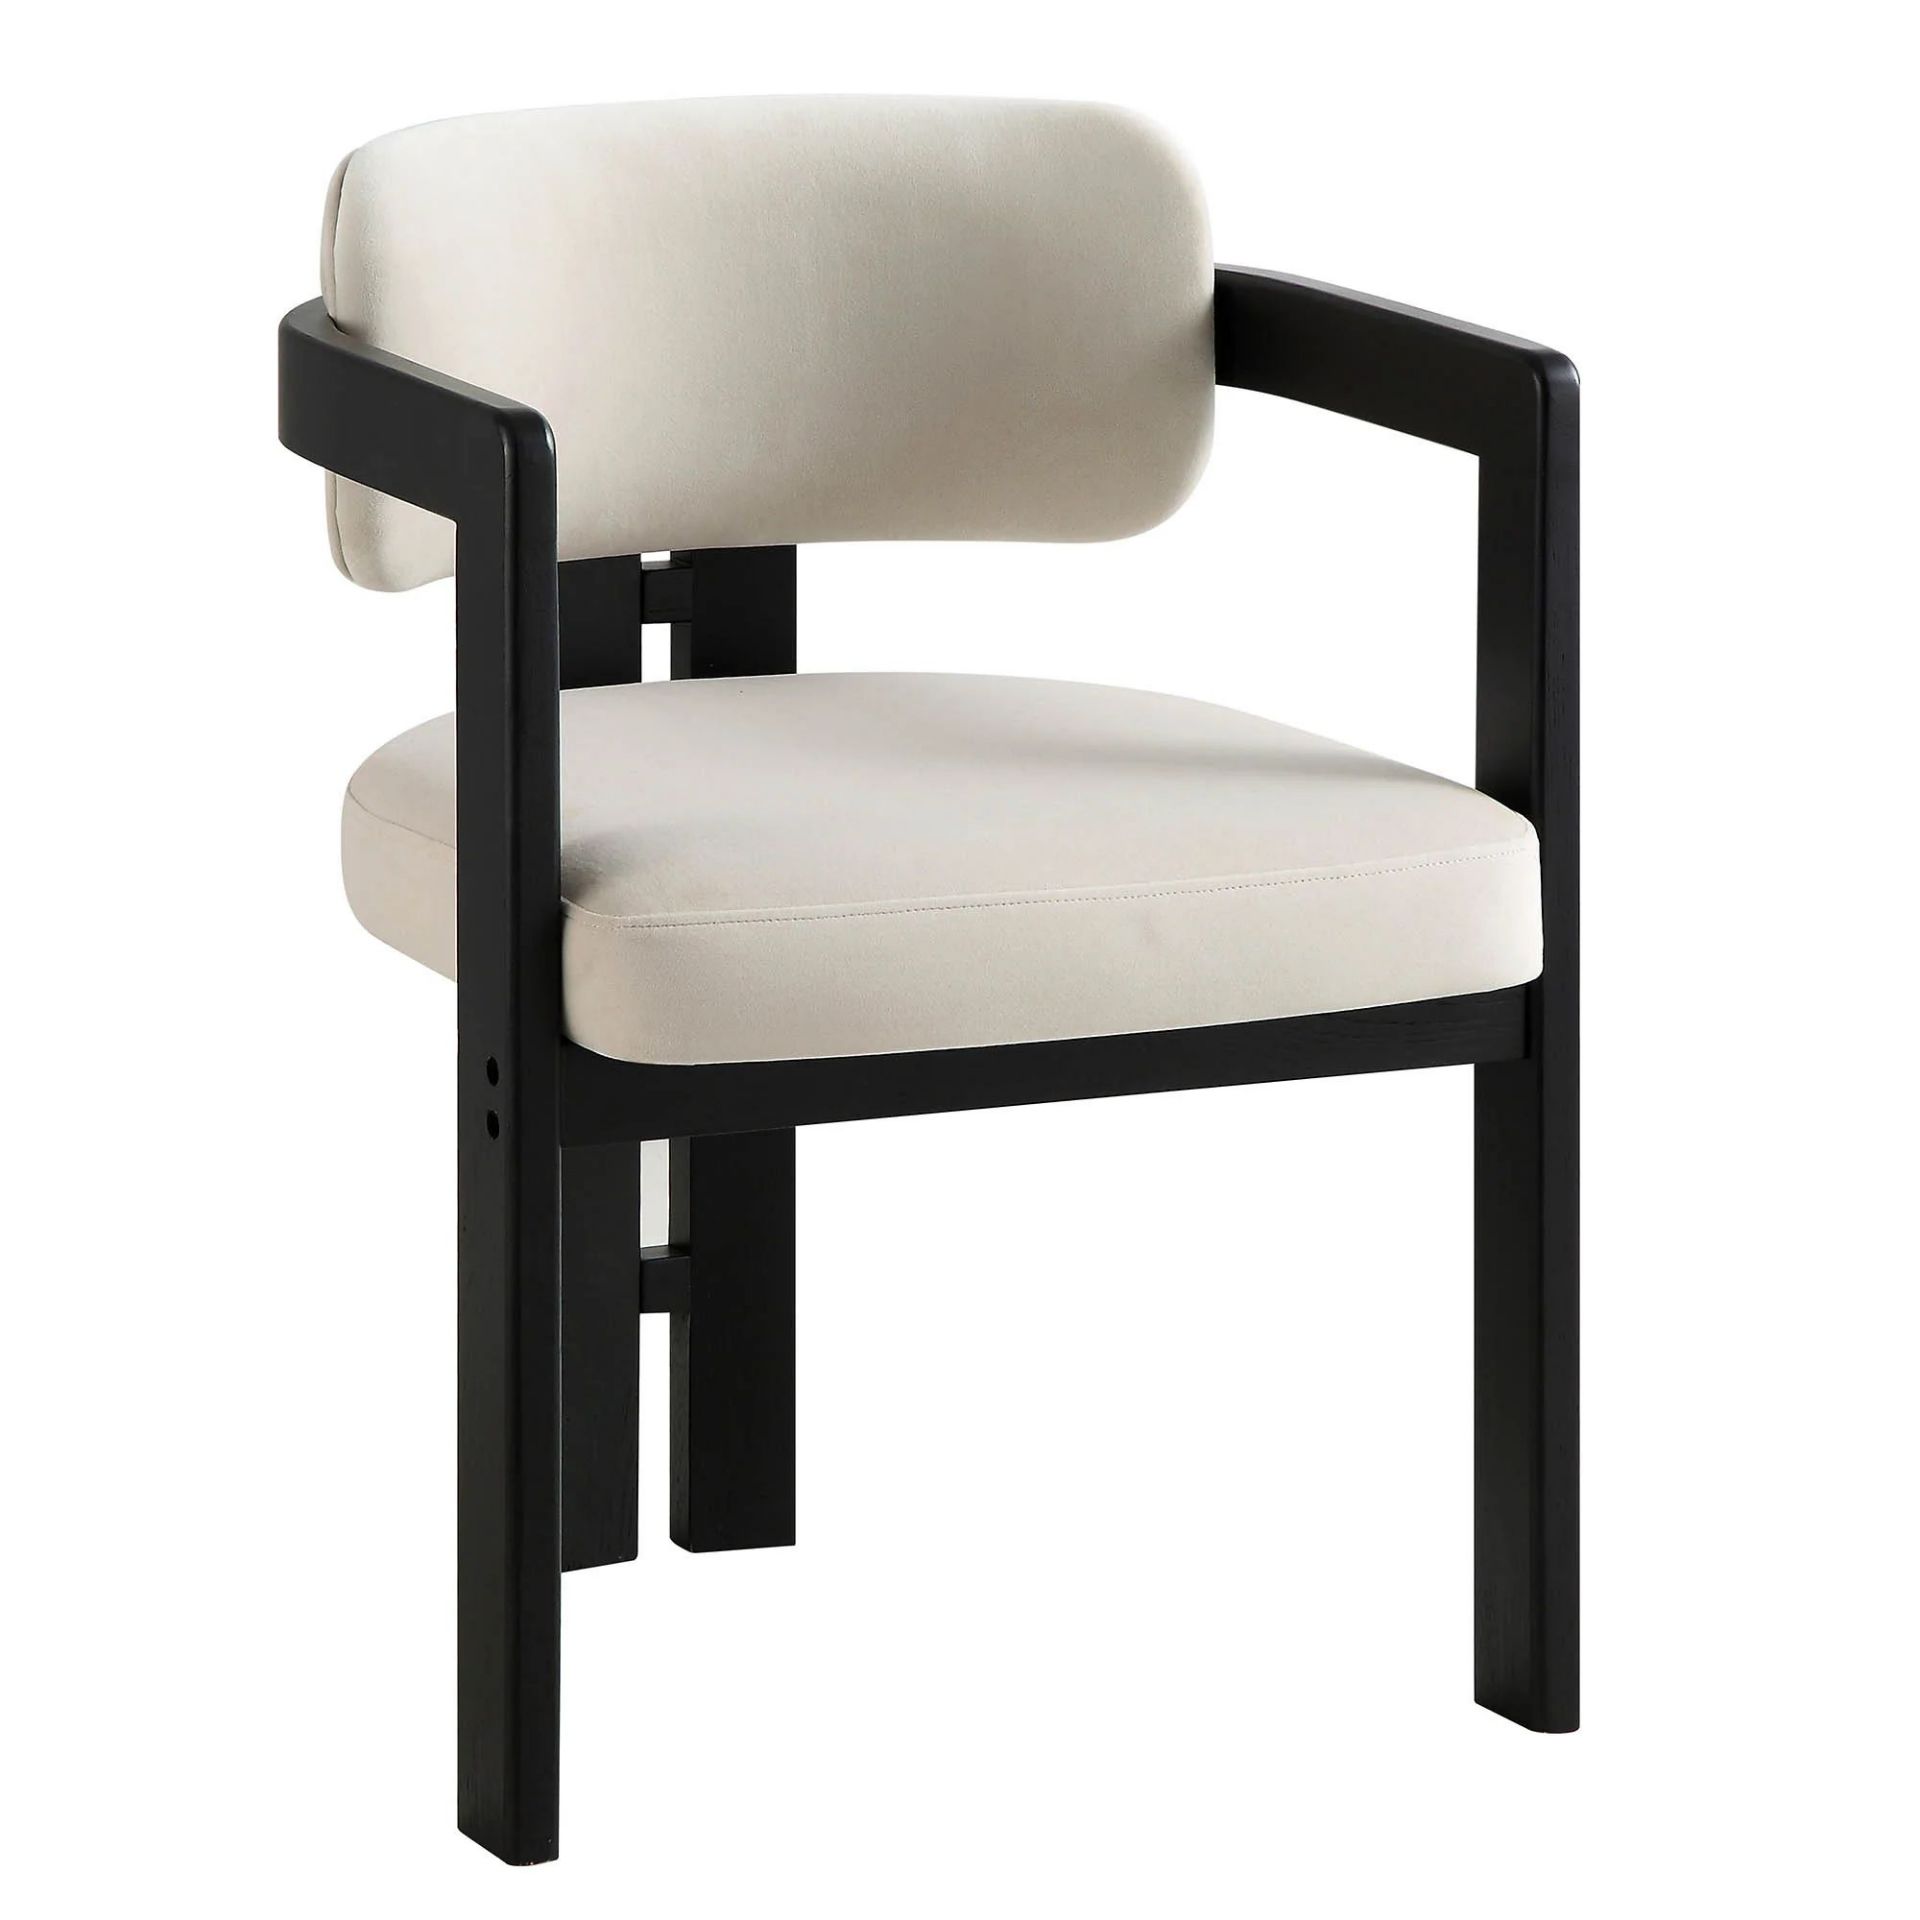 Stanford Curved Oak Frame Upholstered Chair, Champagne Velvet Black Frame. - R14. RRP £219.99. - Image 2 of 2